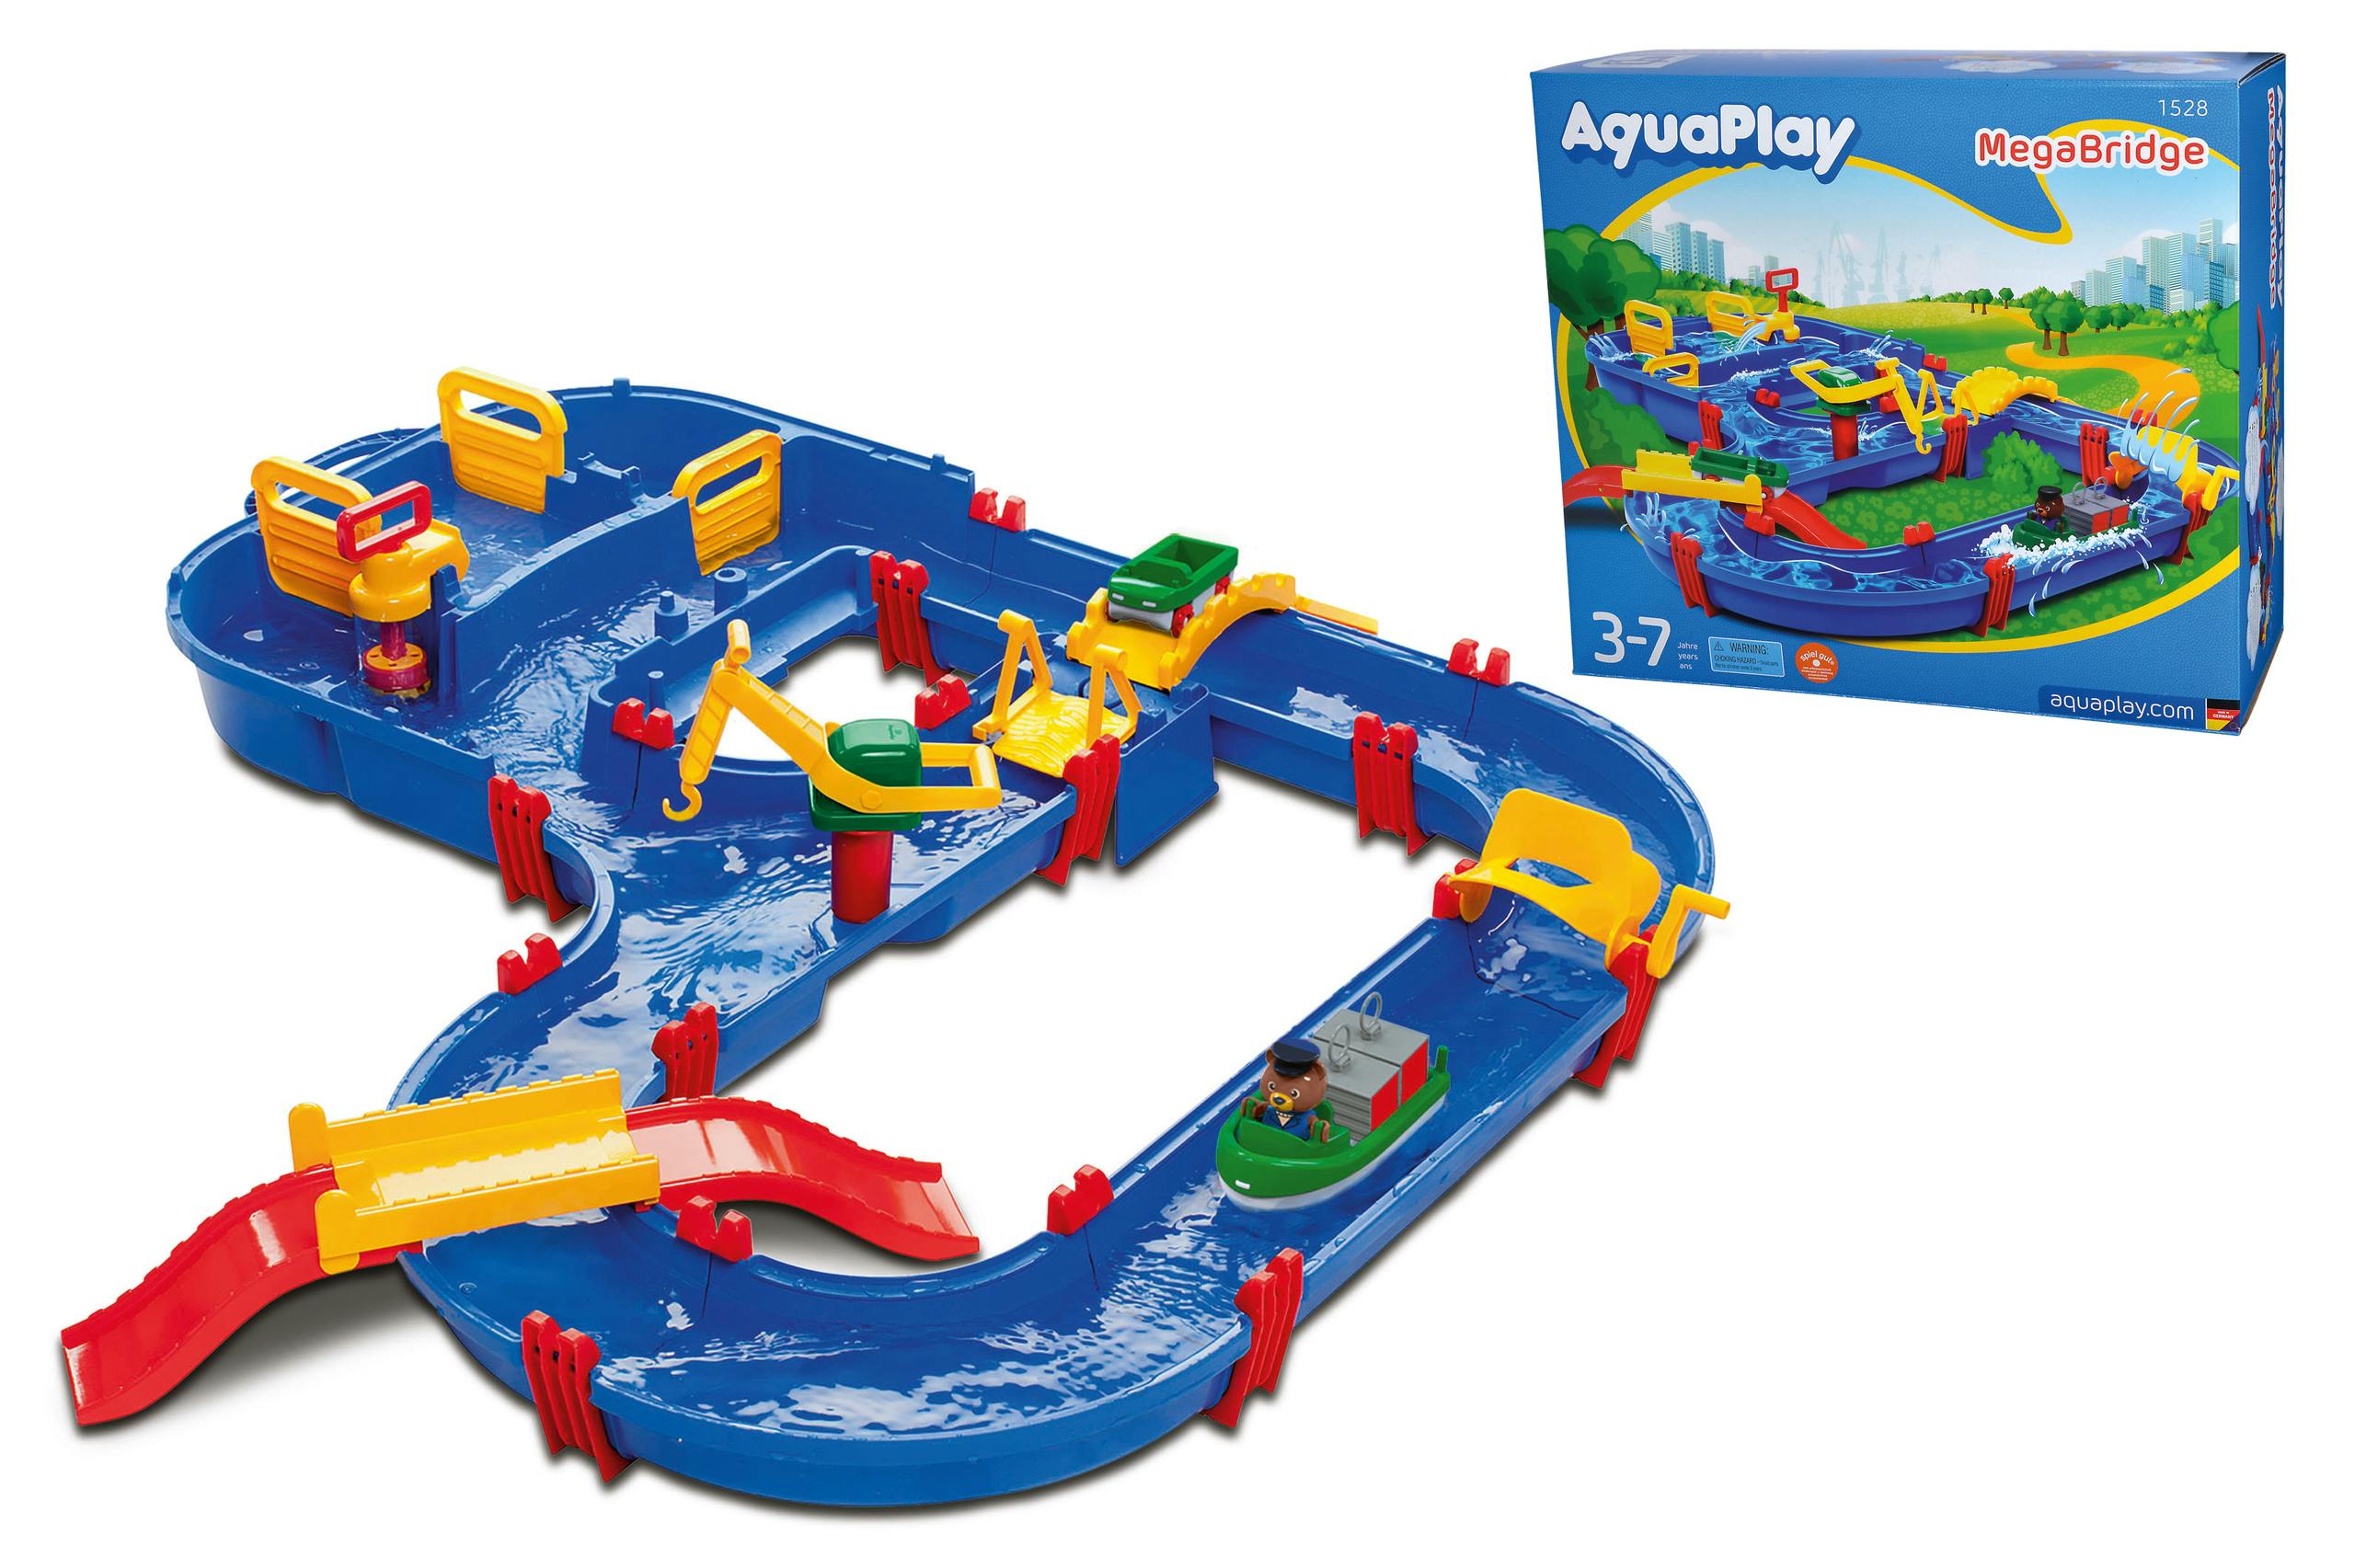 Aquaplay Megabridge 1528 - Cours D'eau